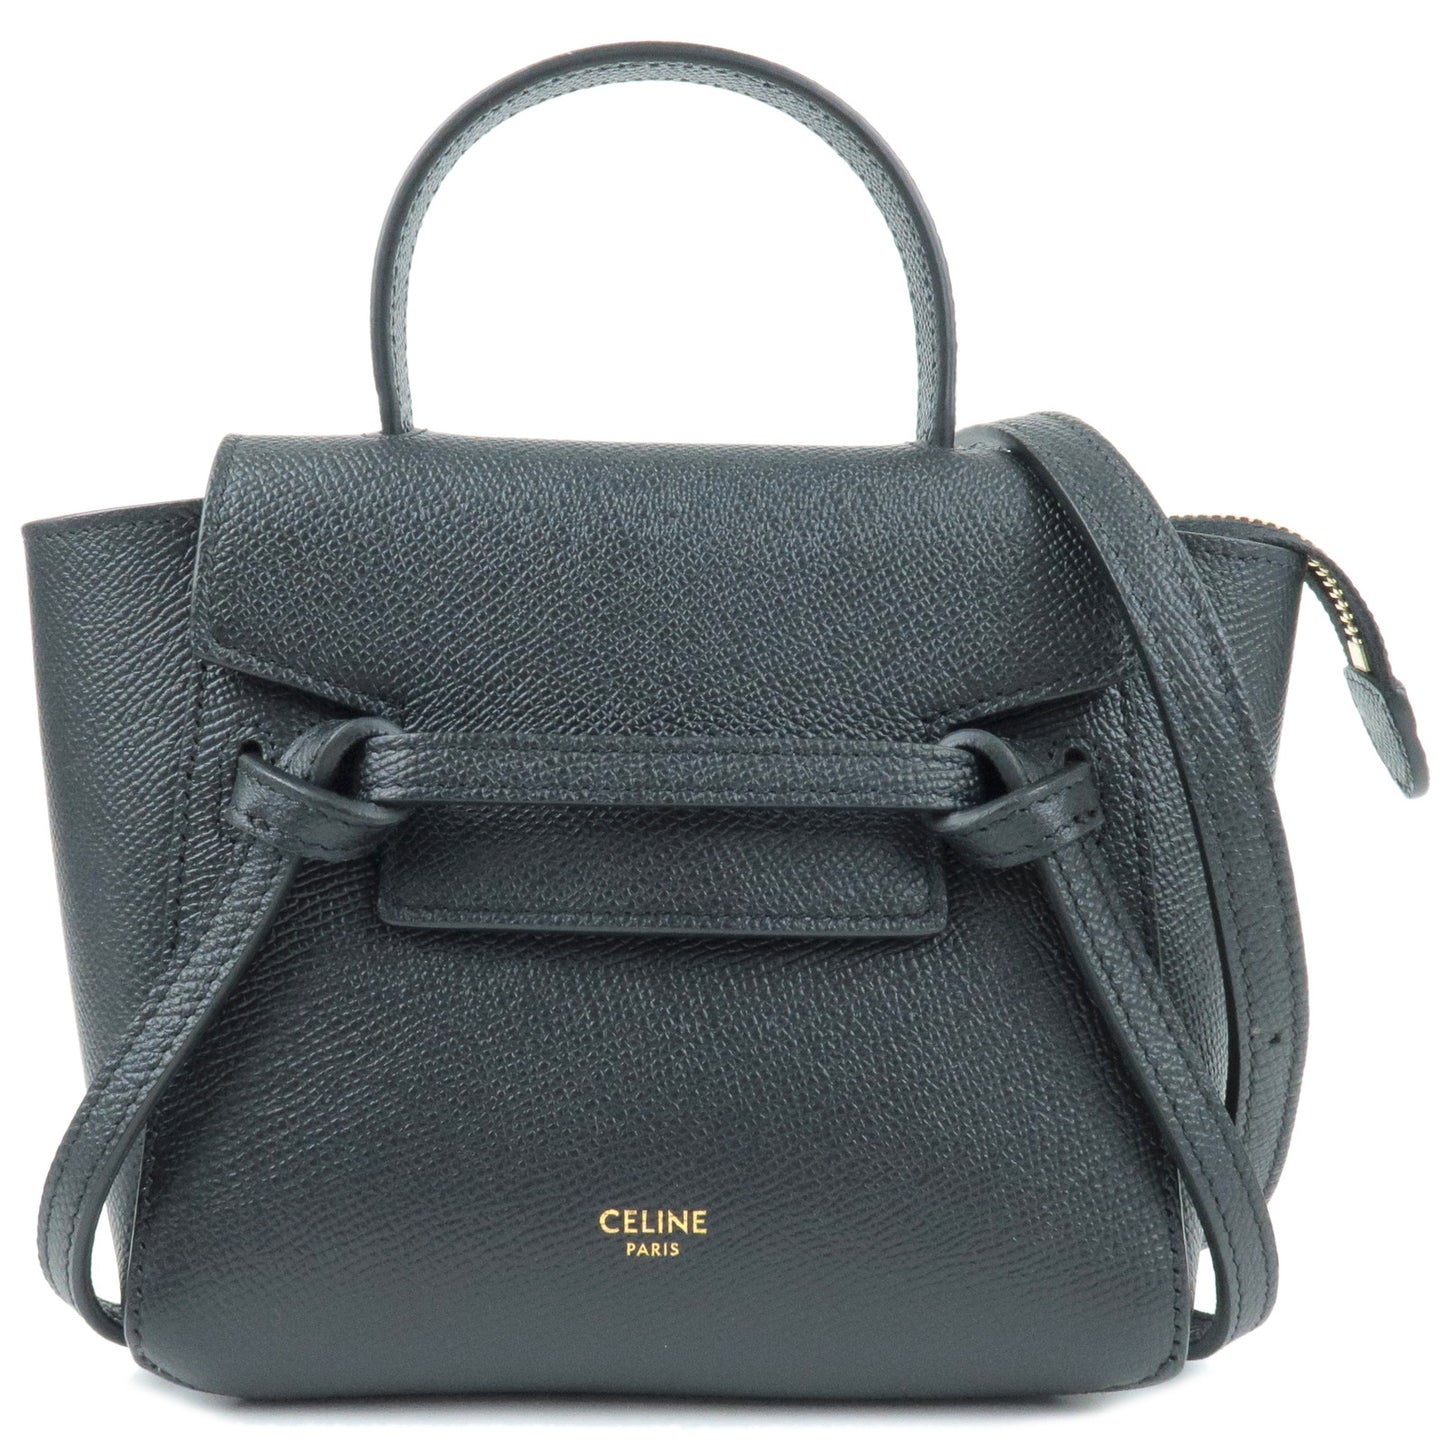 CELINE-Pico-Leather-Belt-Bag-2Way-Bag-Hand-Bag-Black-194263